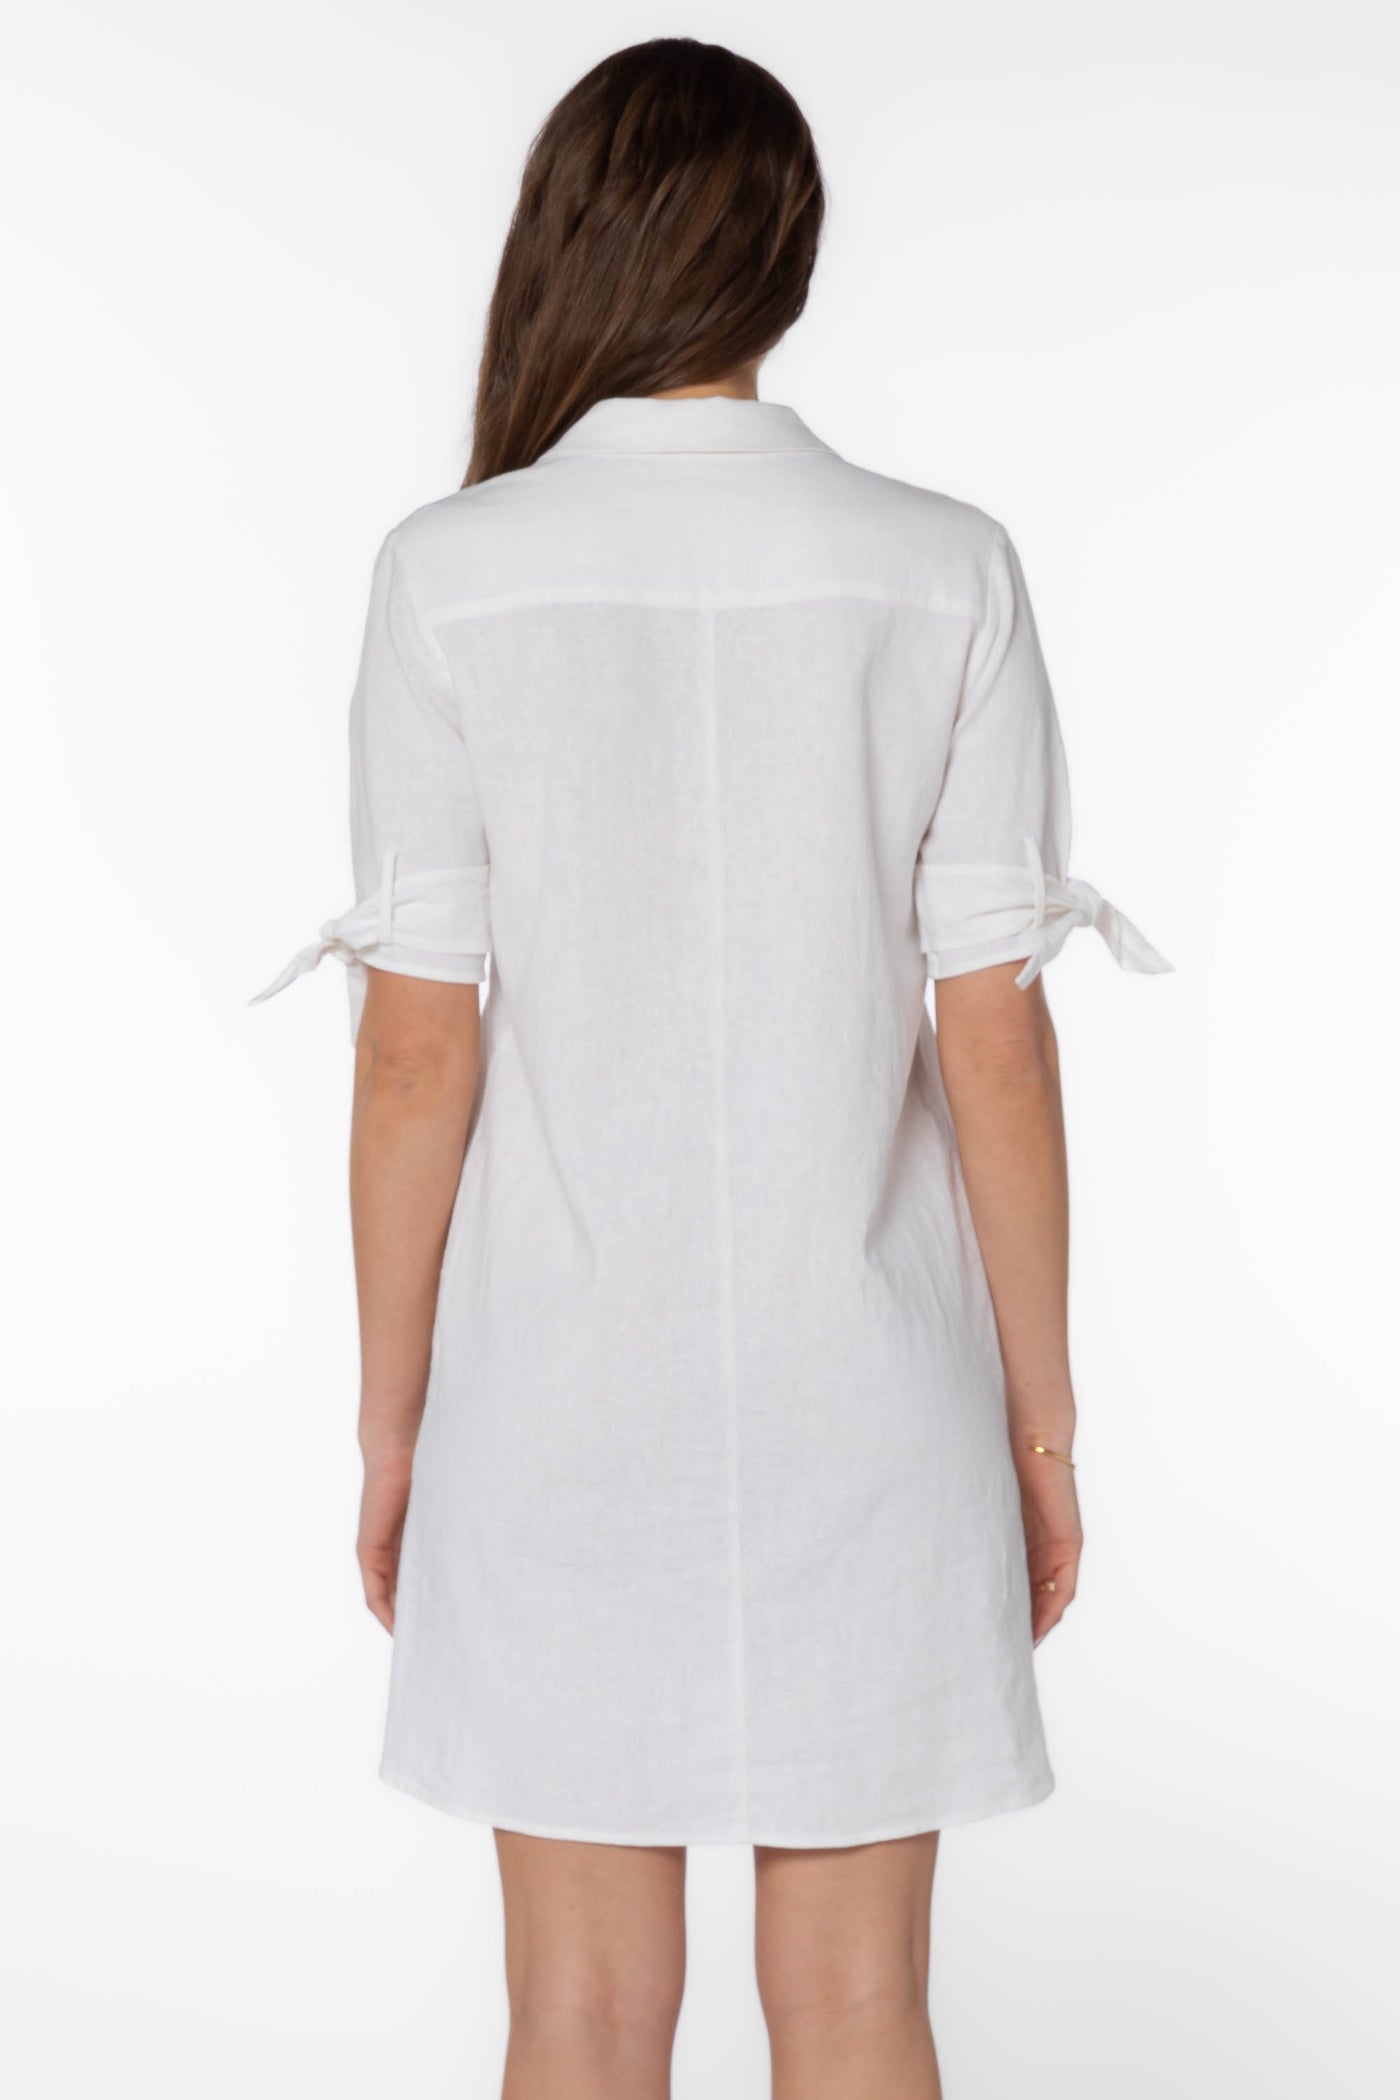 Ceana White Dress - Dresses - Velvet Heart Clothing